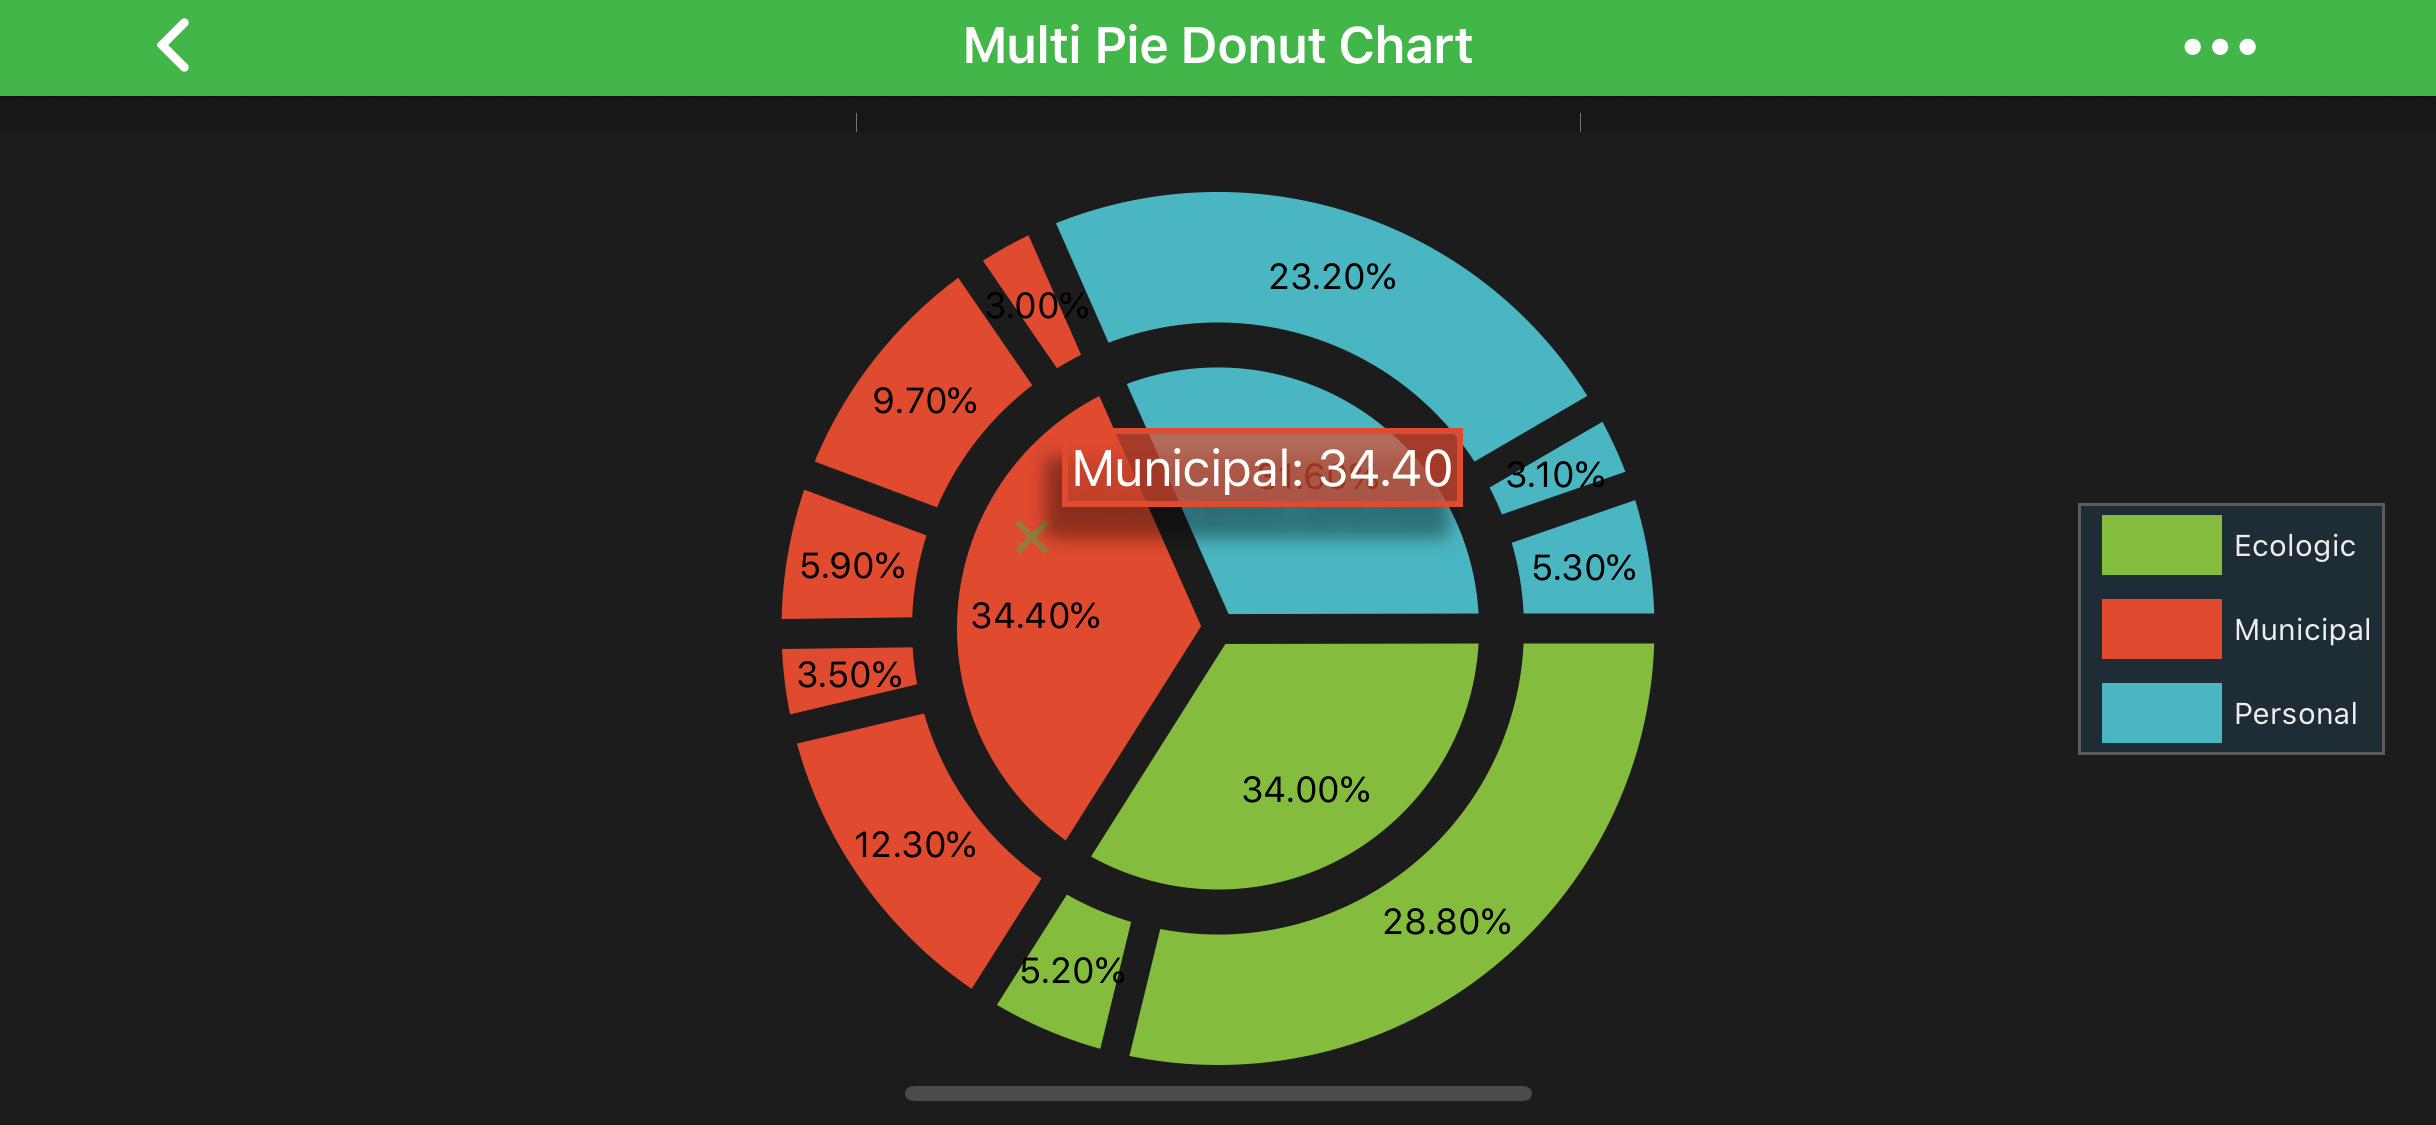 Multi Pie Donut